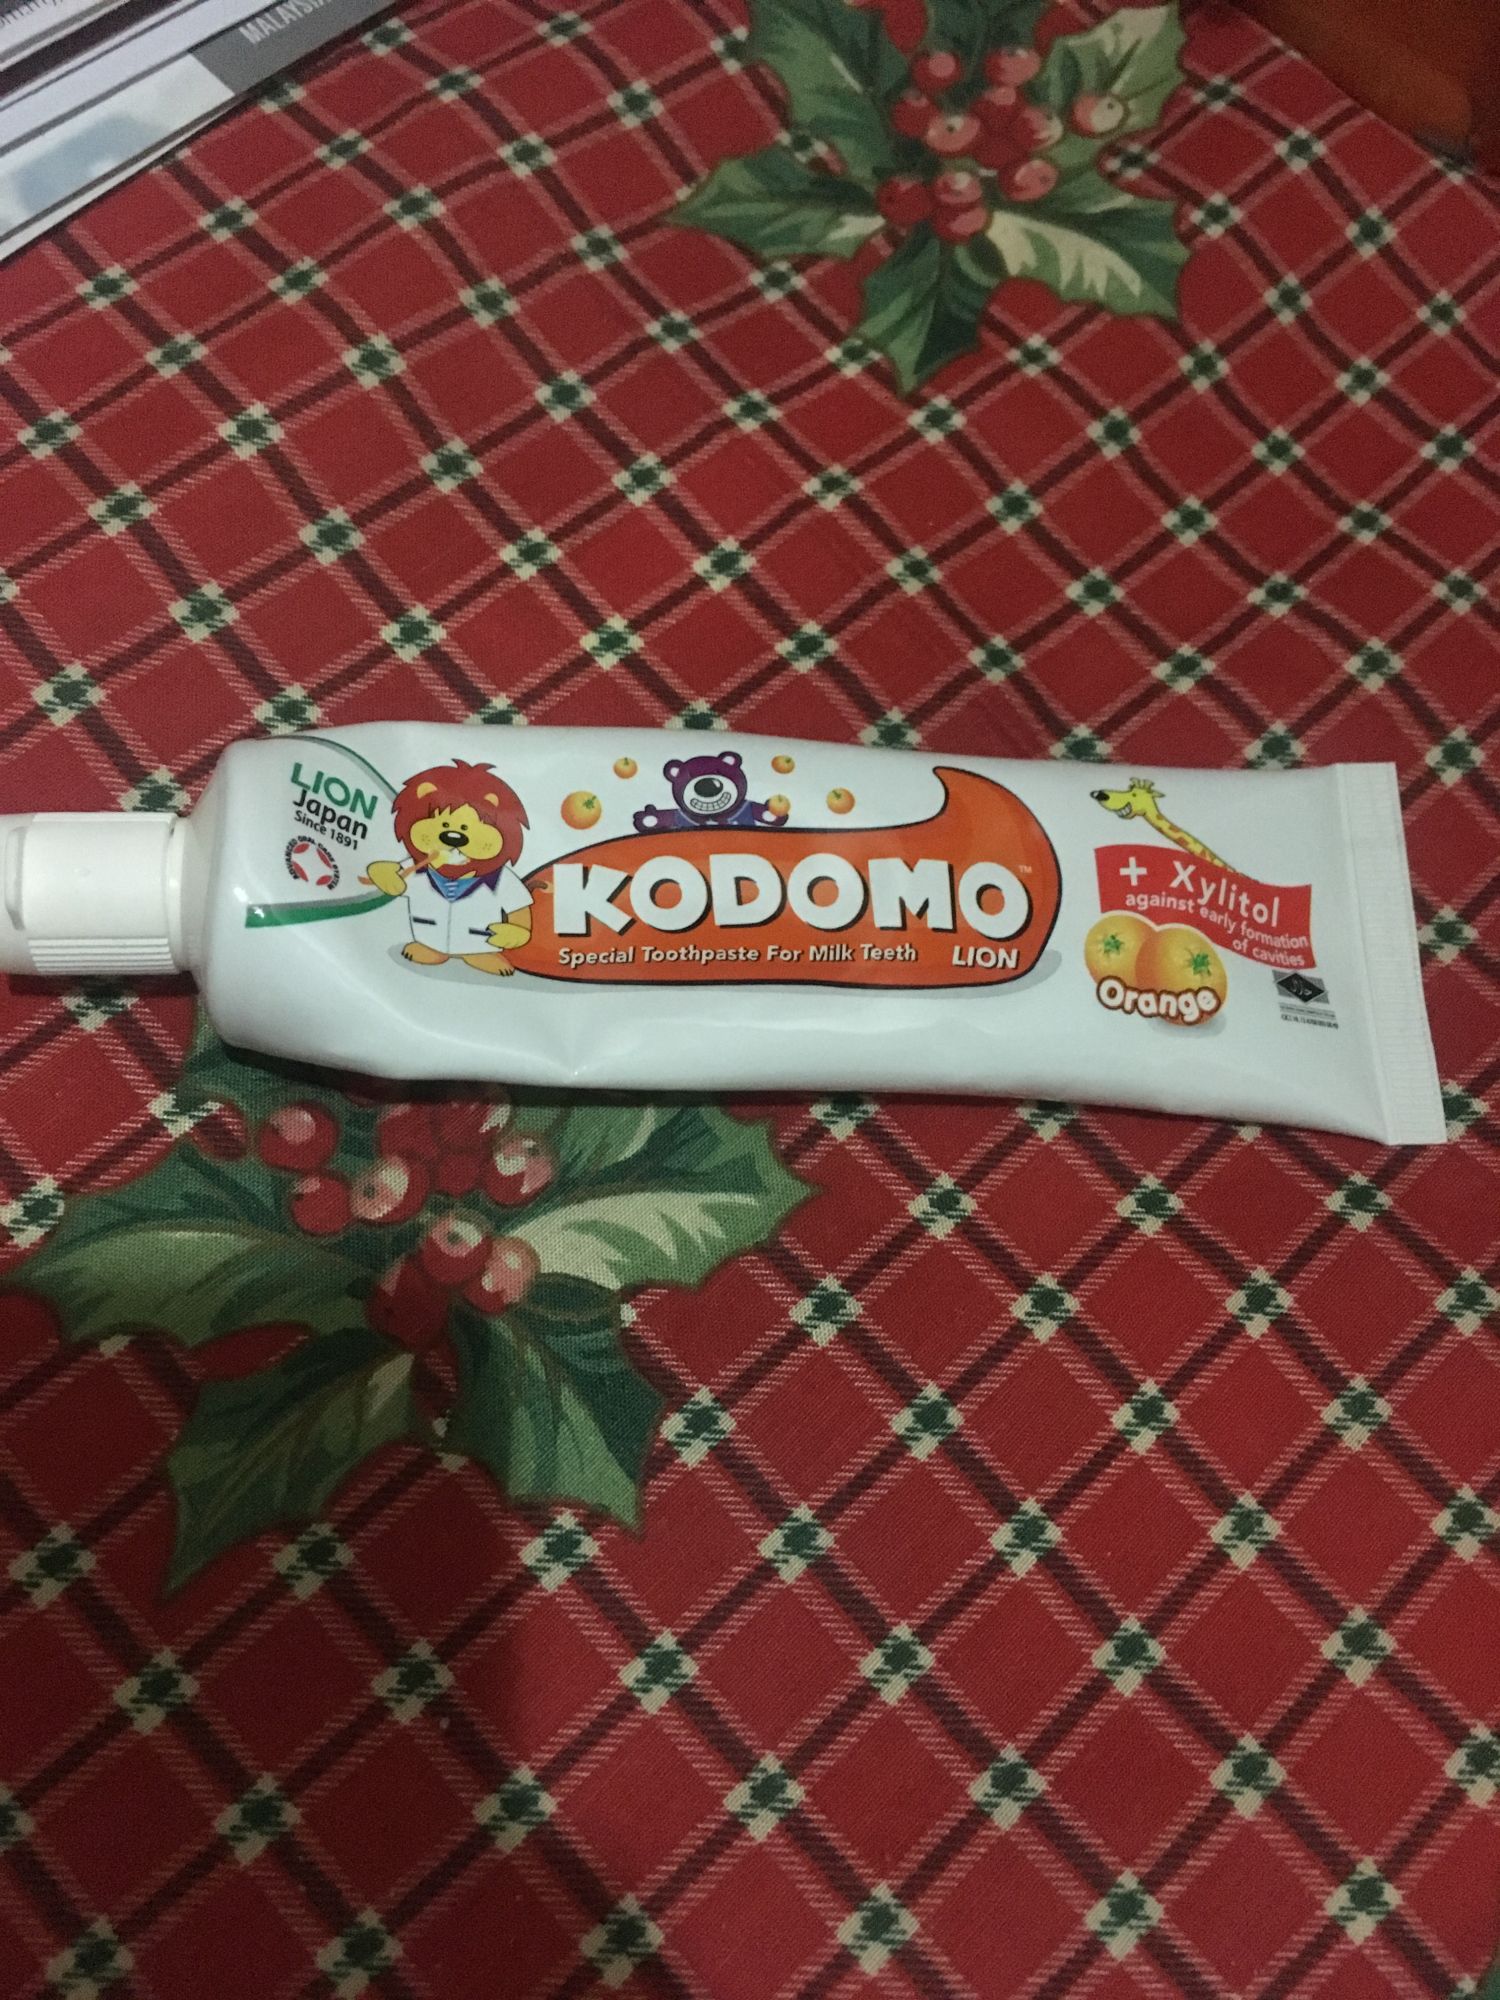 Kodomo Lion Toothpaste reviews